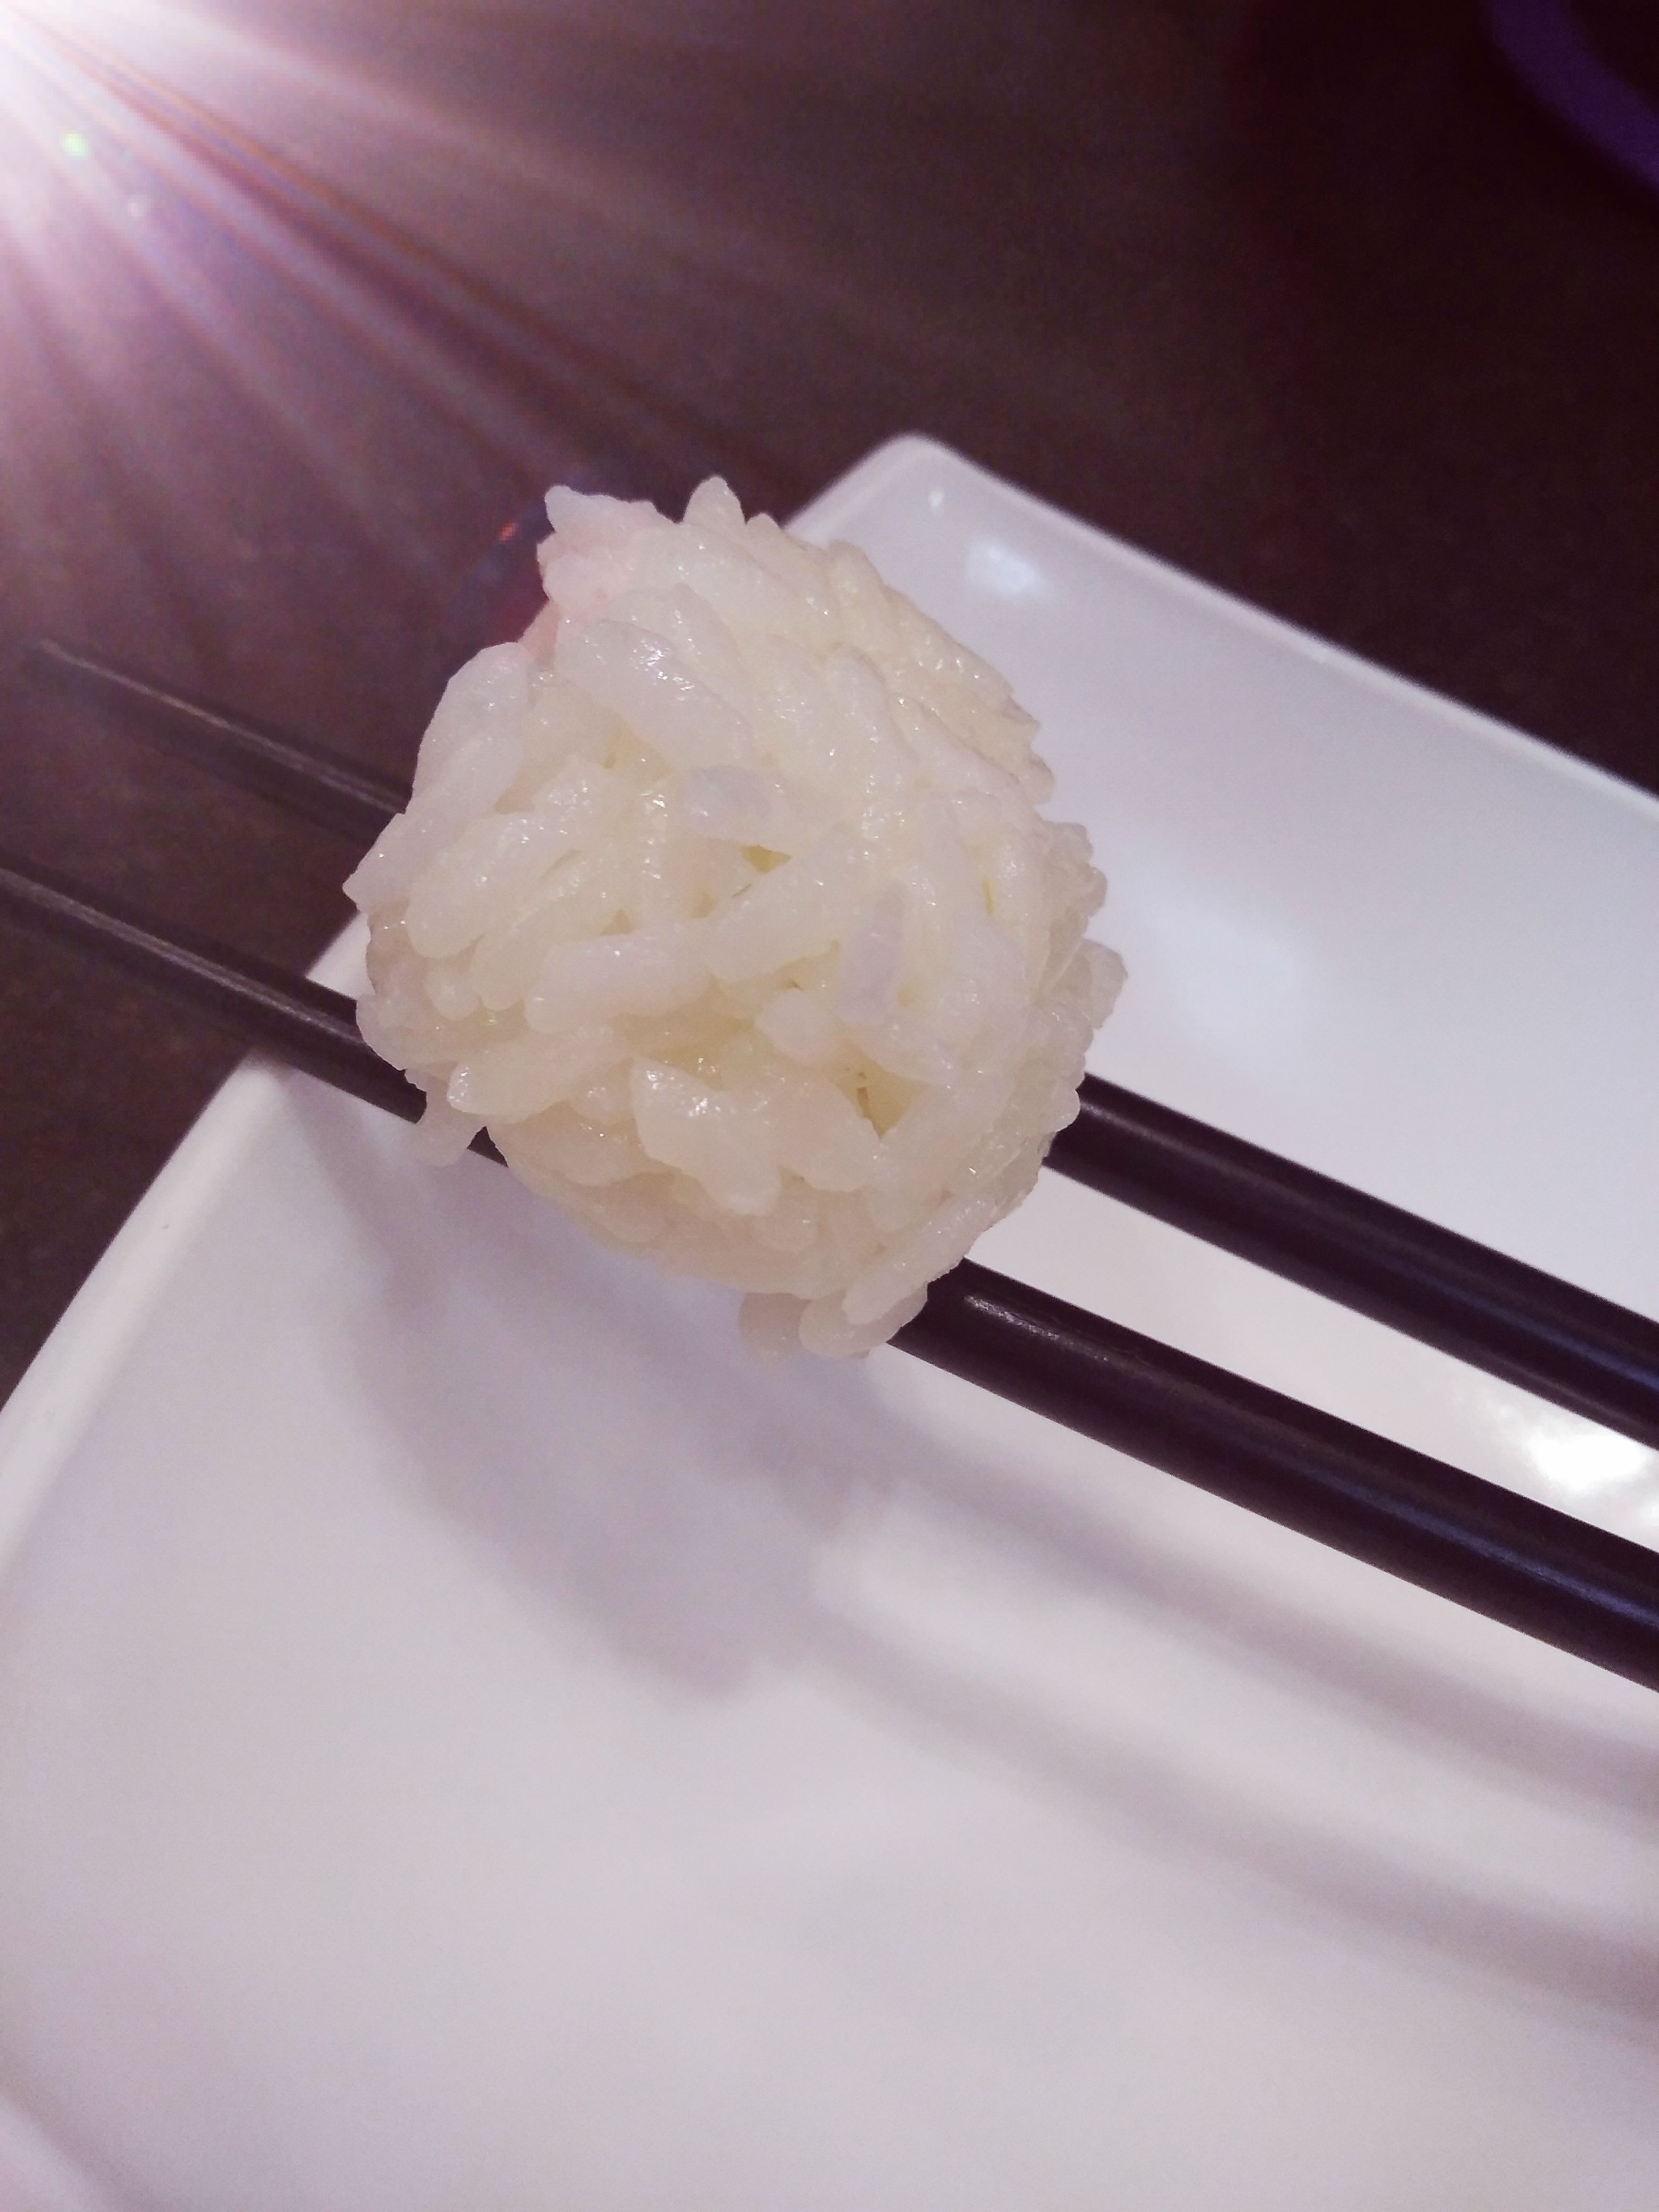 Идеальный рис для суши и роллов